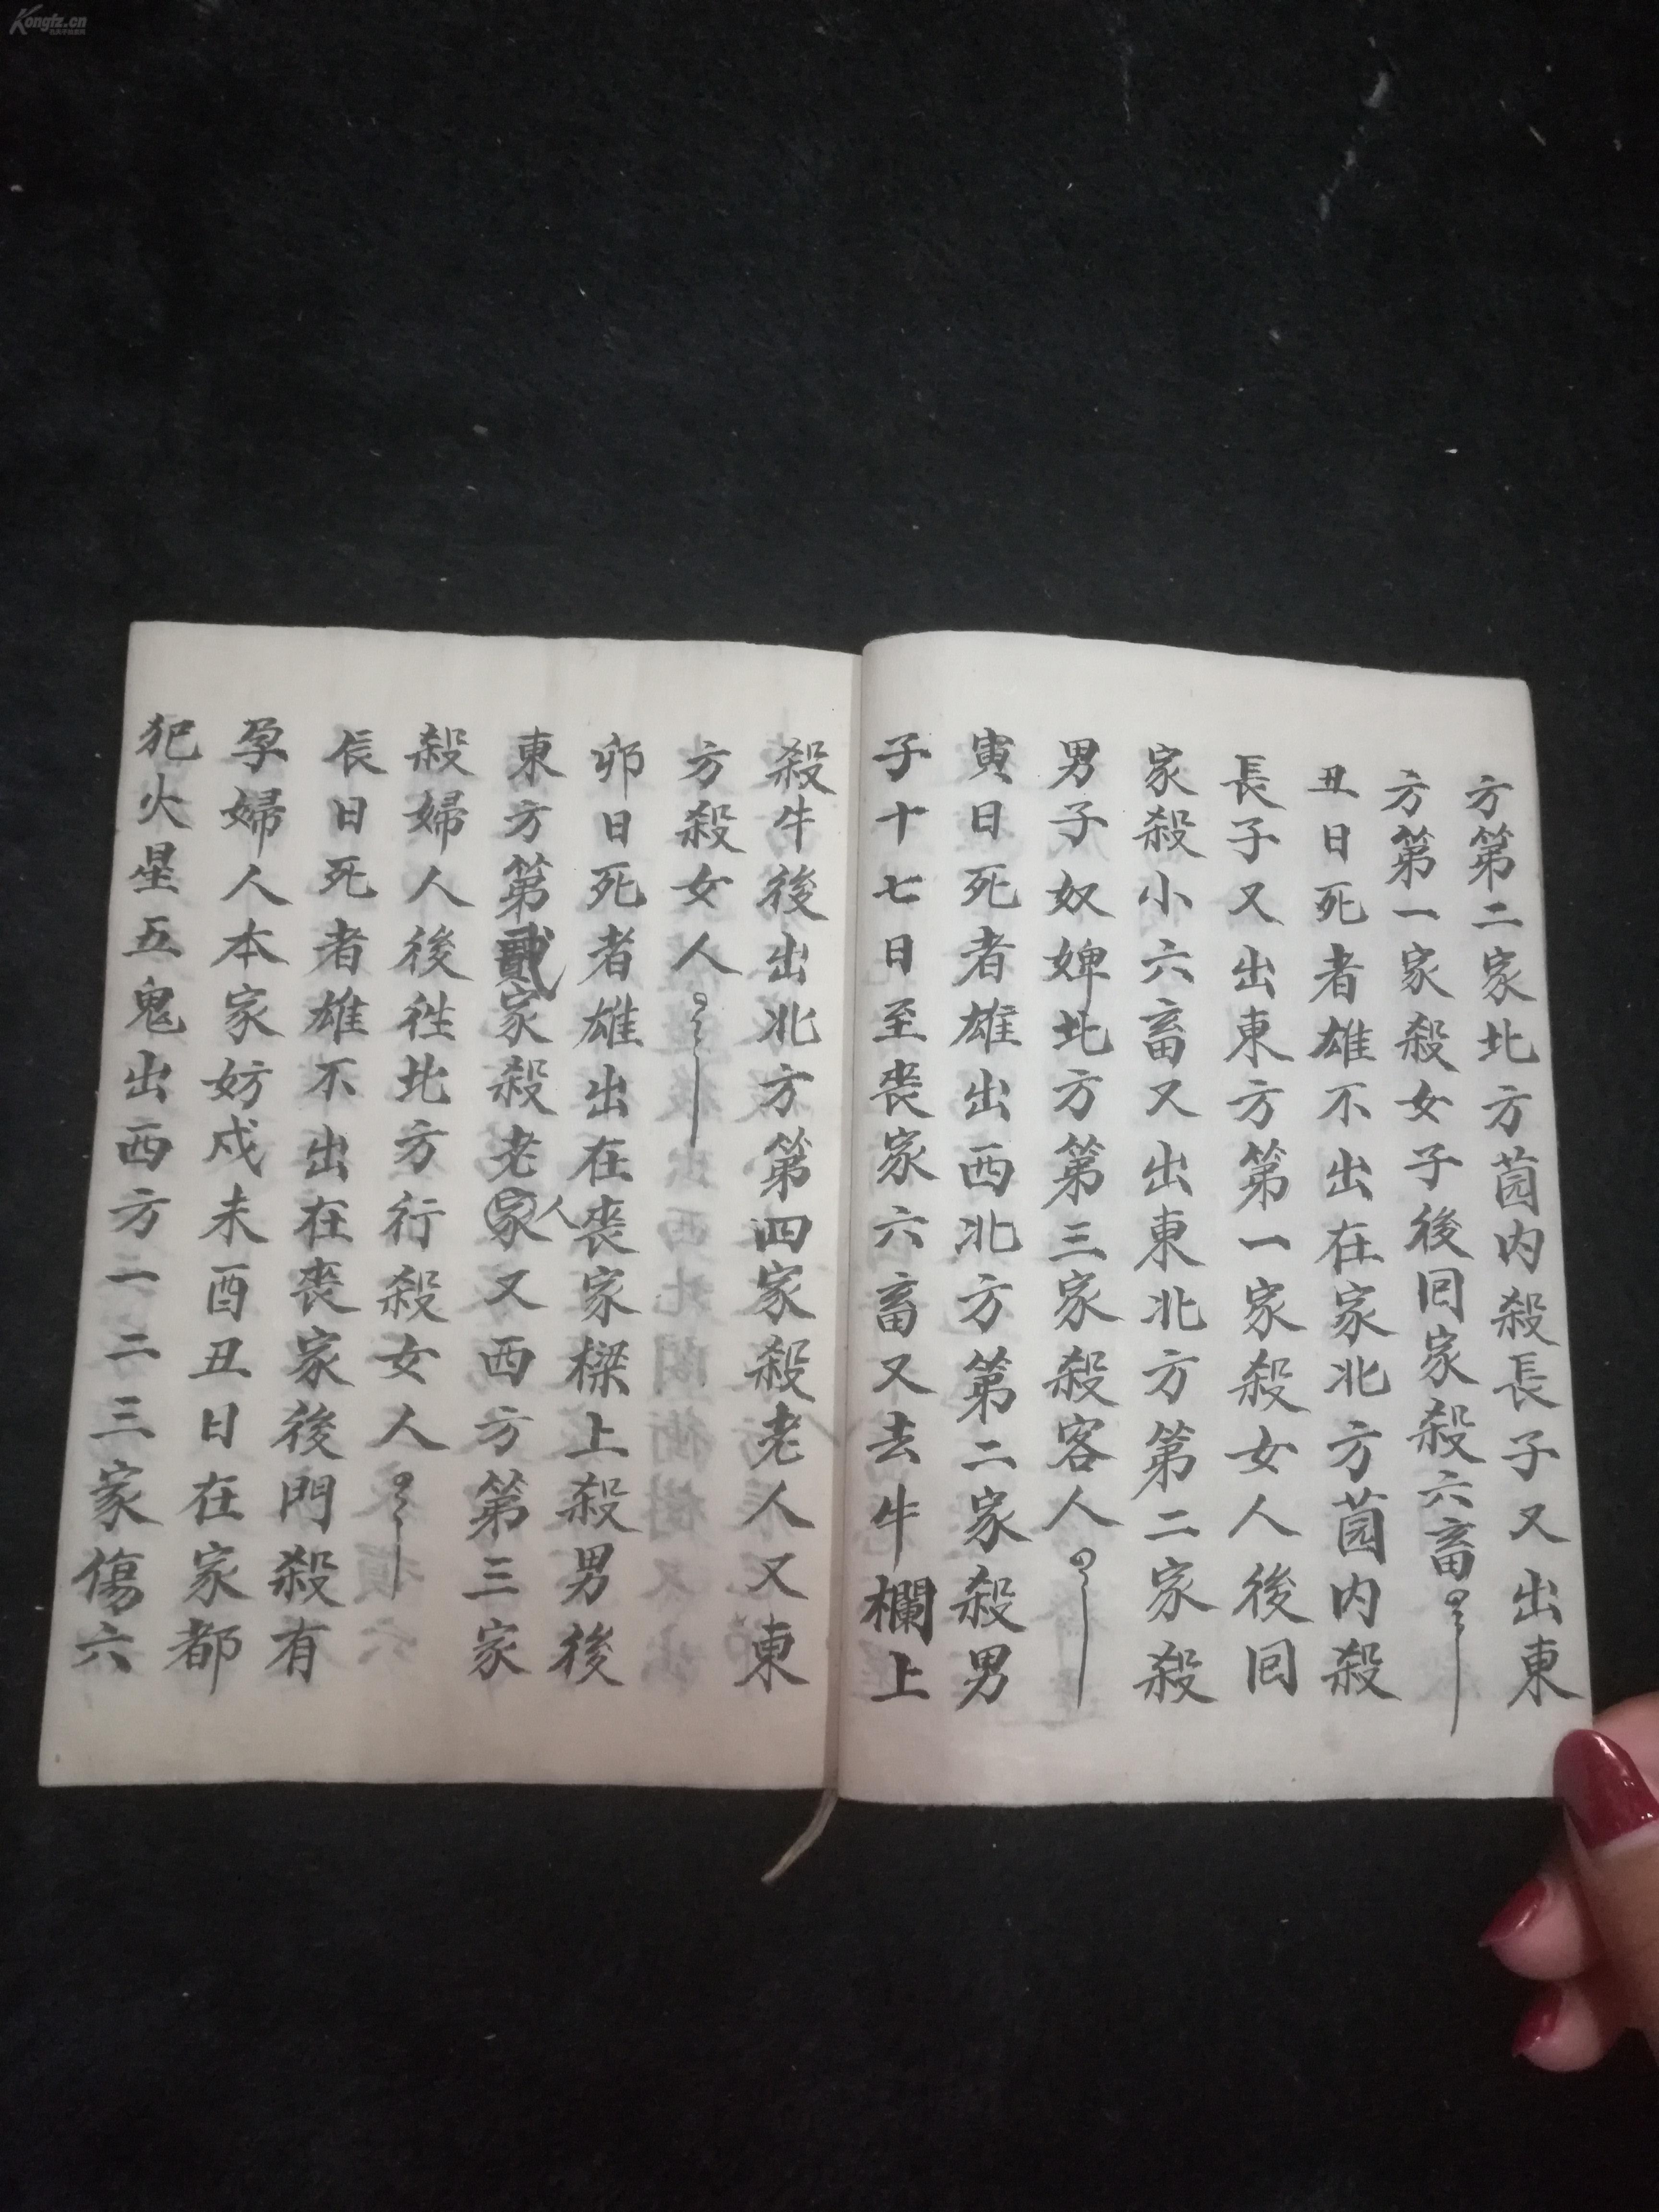 手抄本 1952年杨新相抄《三世黑书 》一册全 品相可以 稍有污渍 有小